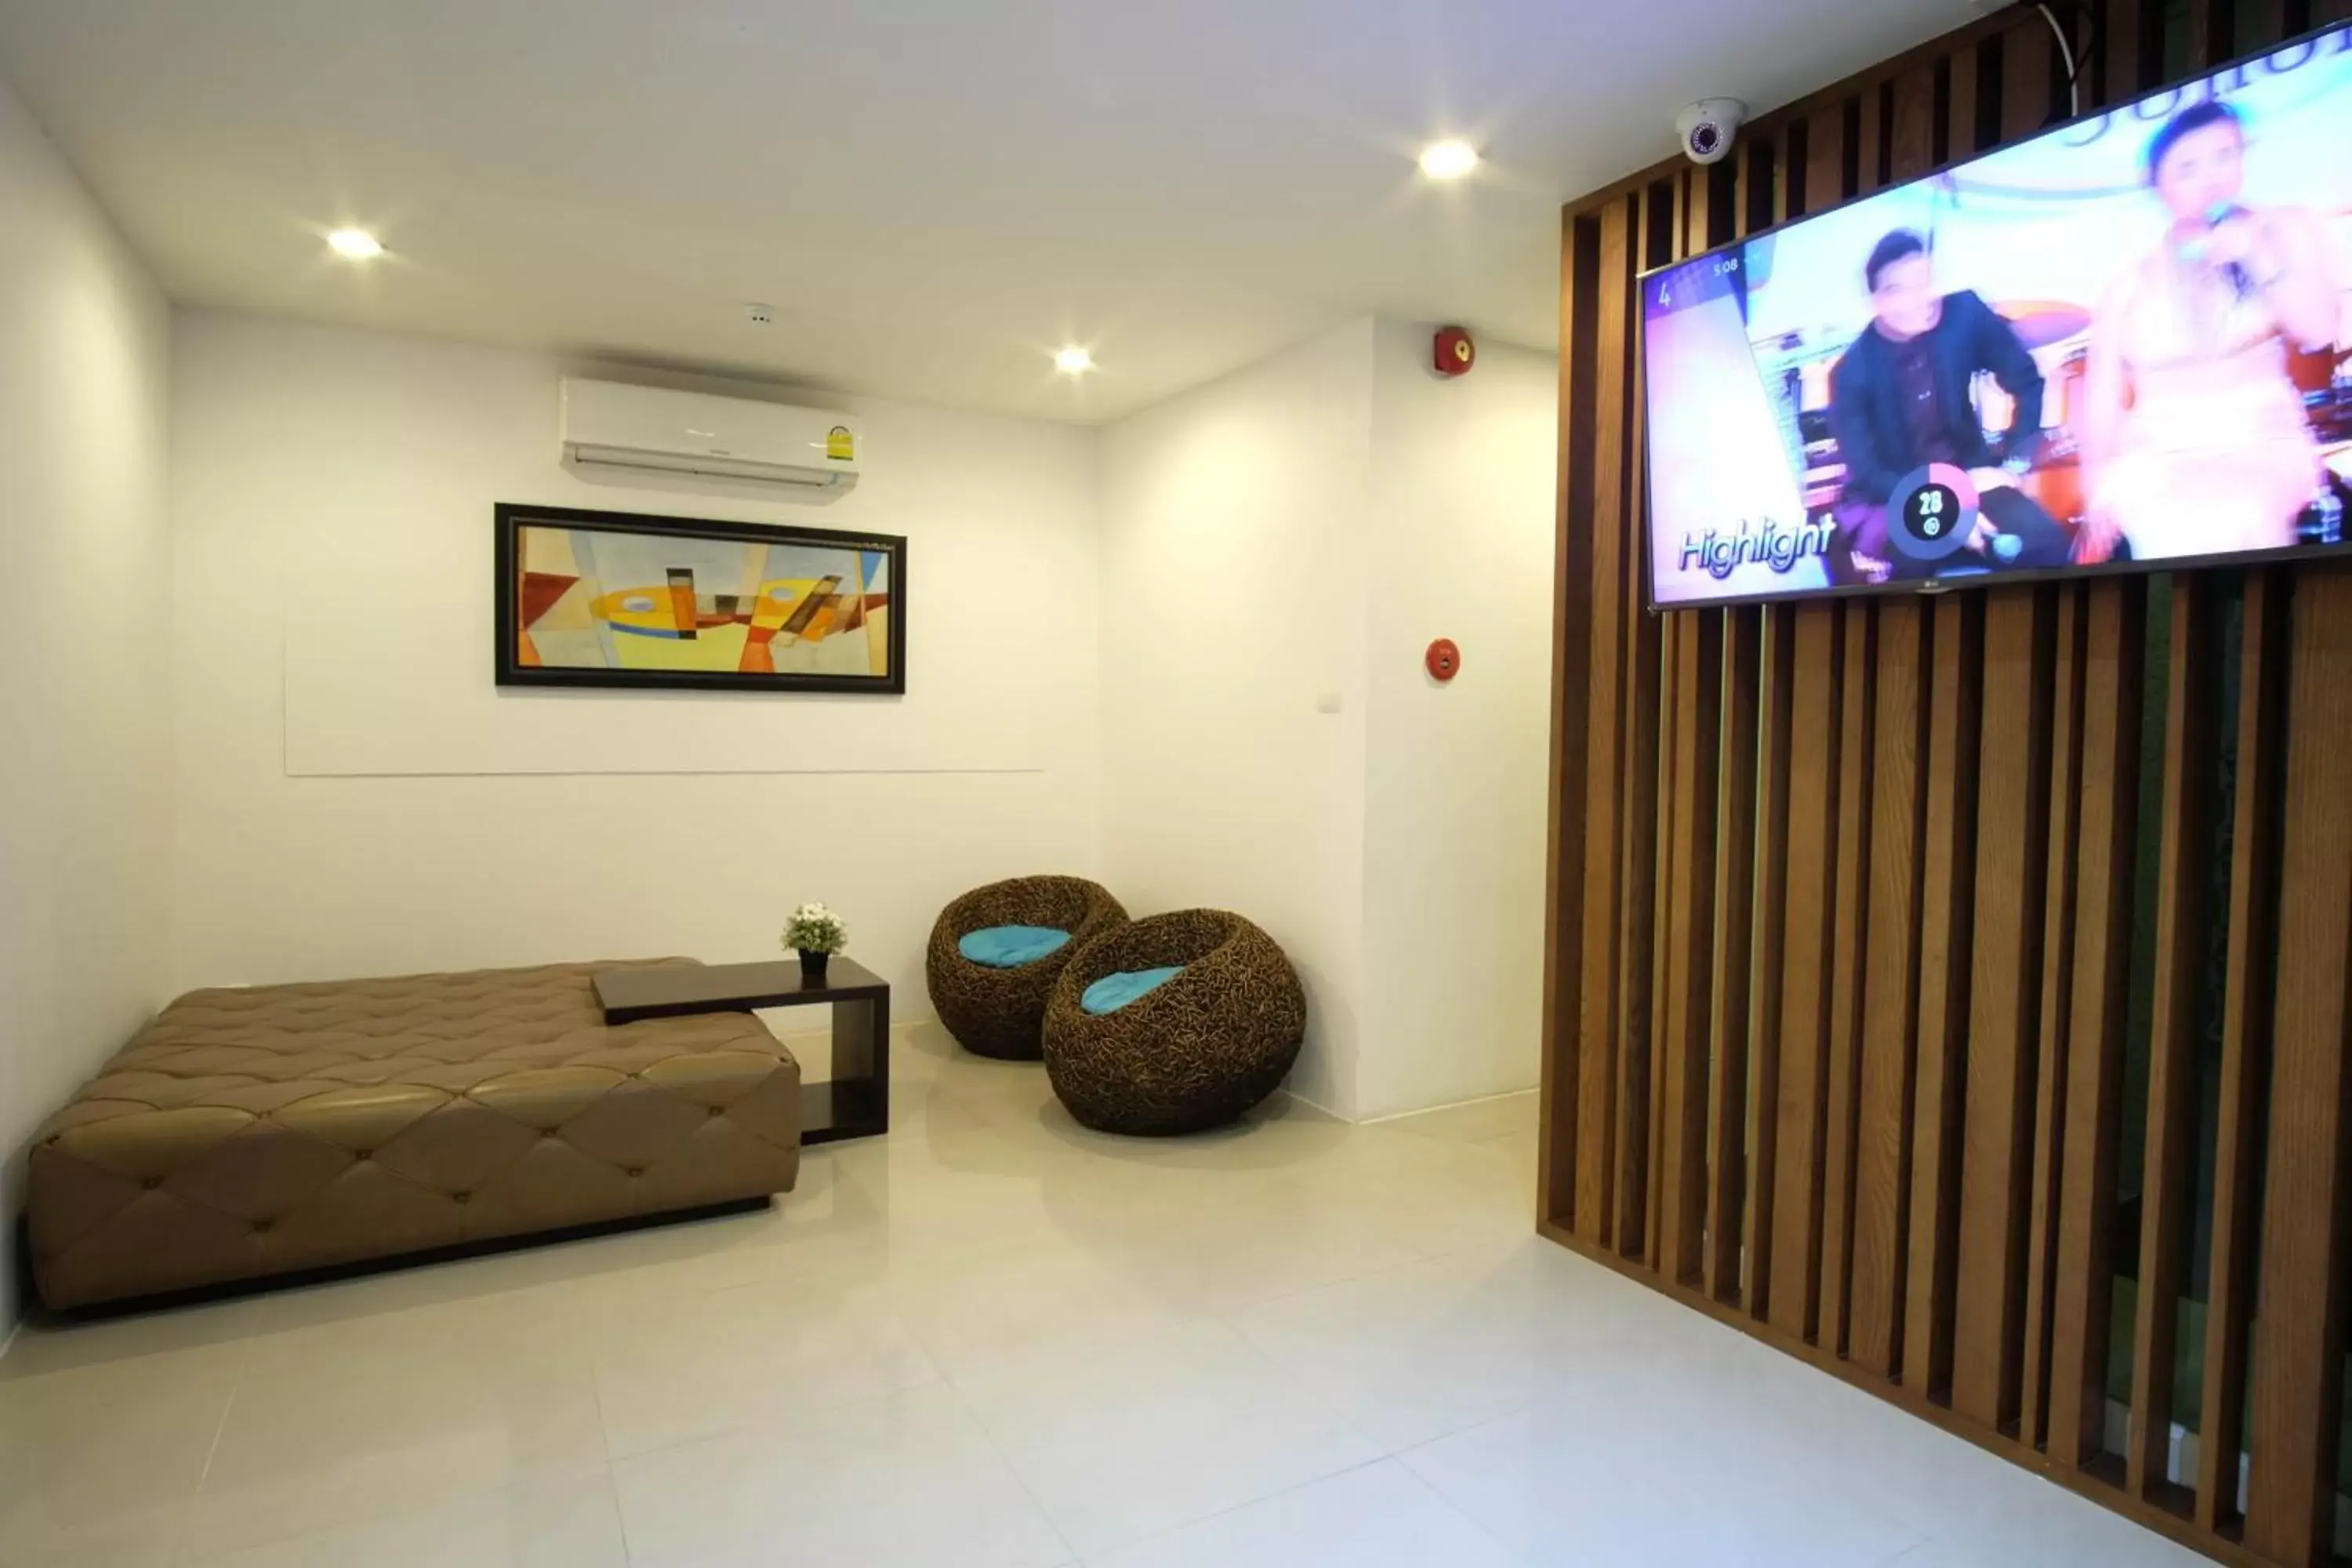 Lobby or reception, Lobby/Reception in FX Hotel Pattaya